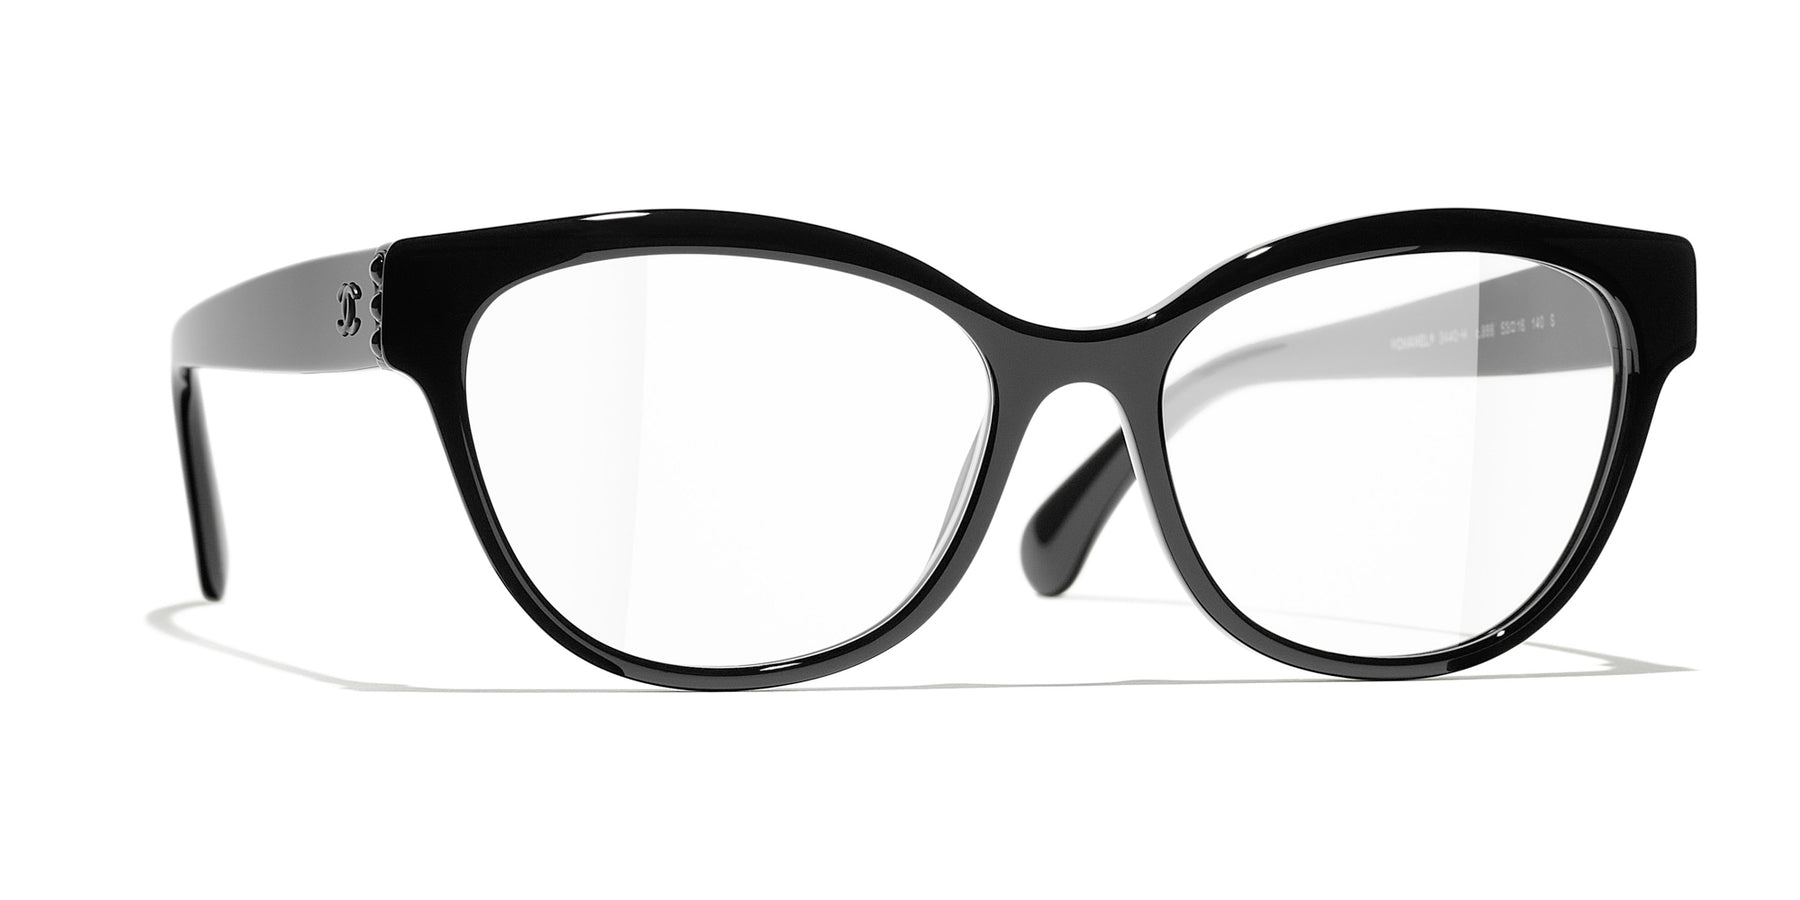 Chanel - Butterfly Sunglasses - White Gray - Chanel Eyewear - Avvenice